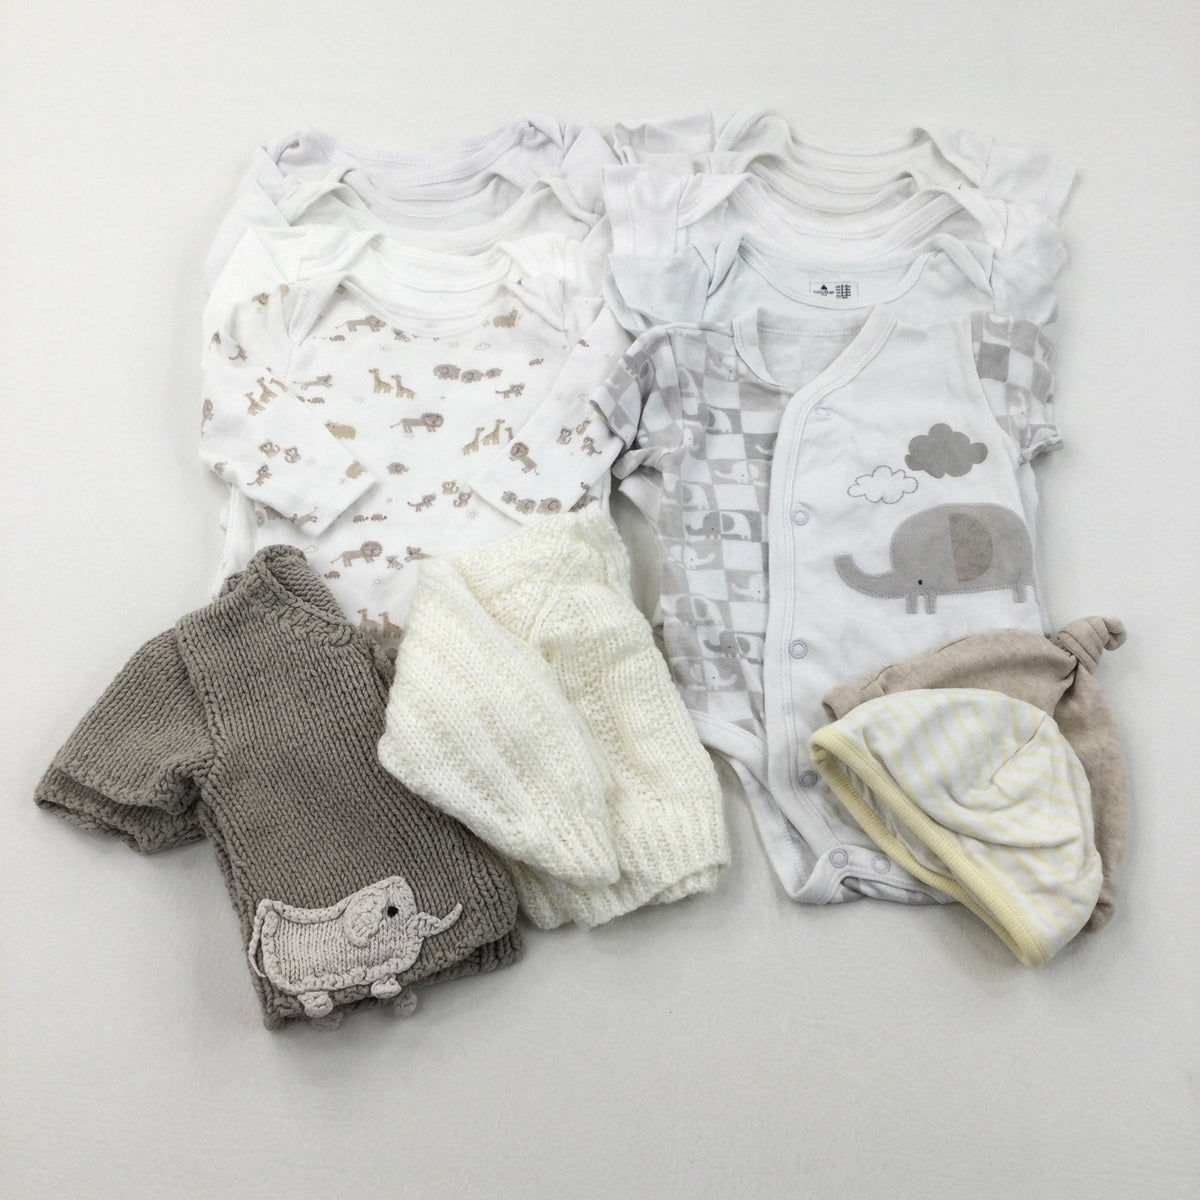 Baby Clothes Bundle (14 Items) - Boys 3-6 Months – Katie's Kids Clothes